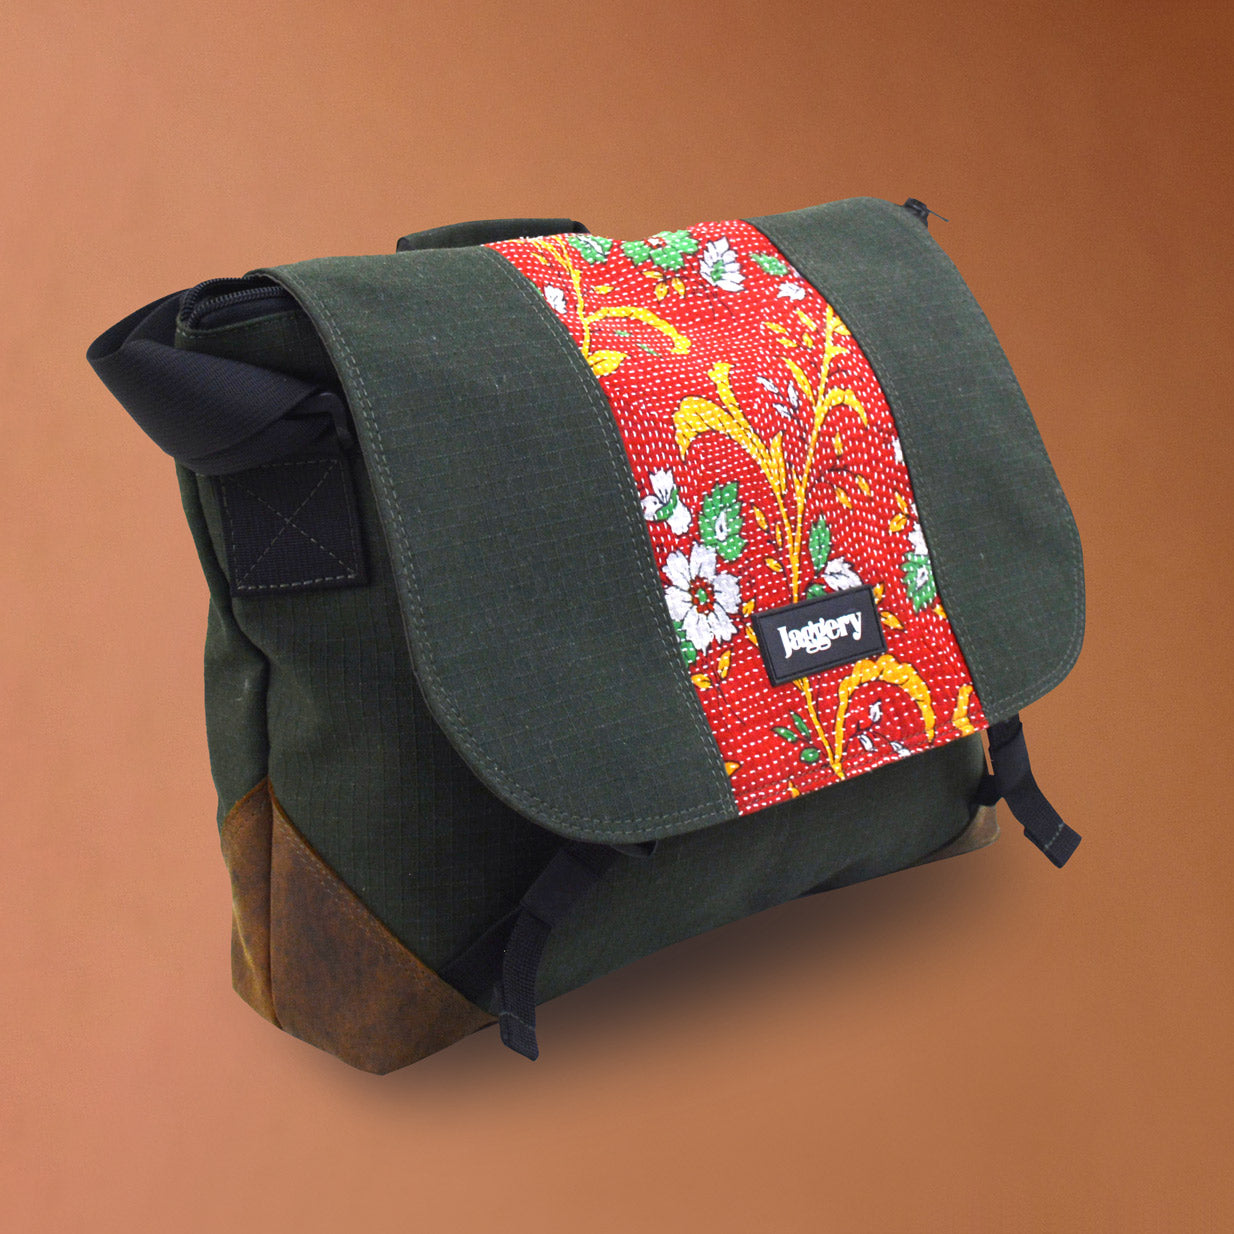 Punar Prayog Doer's Messenger Bag in Ex-Army Olive Green Canvas & Red Kantha  [15" laptop bag]